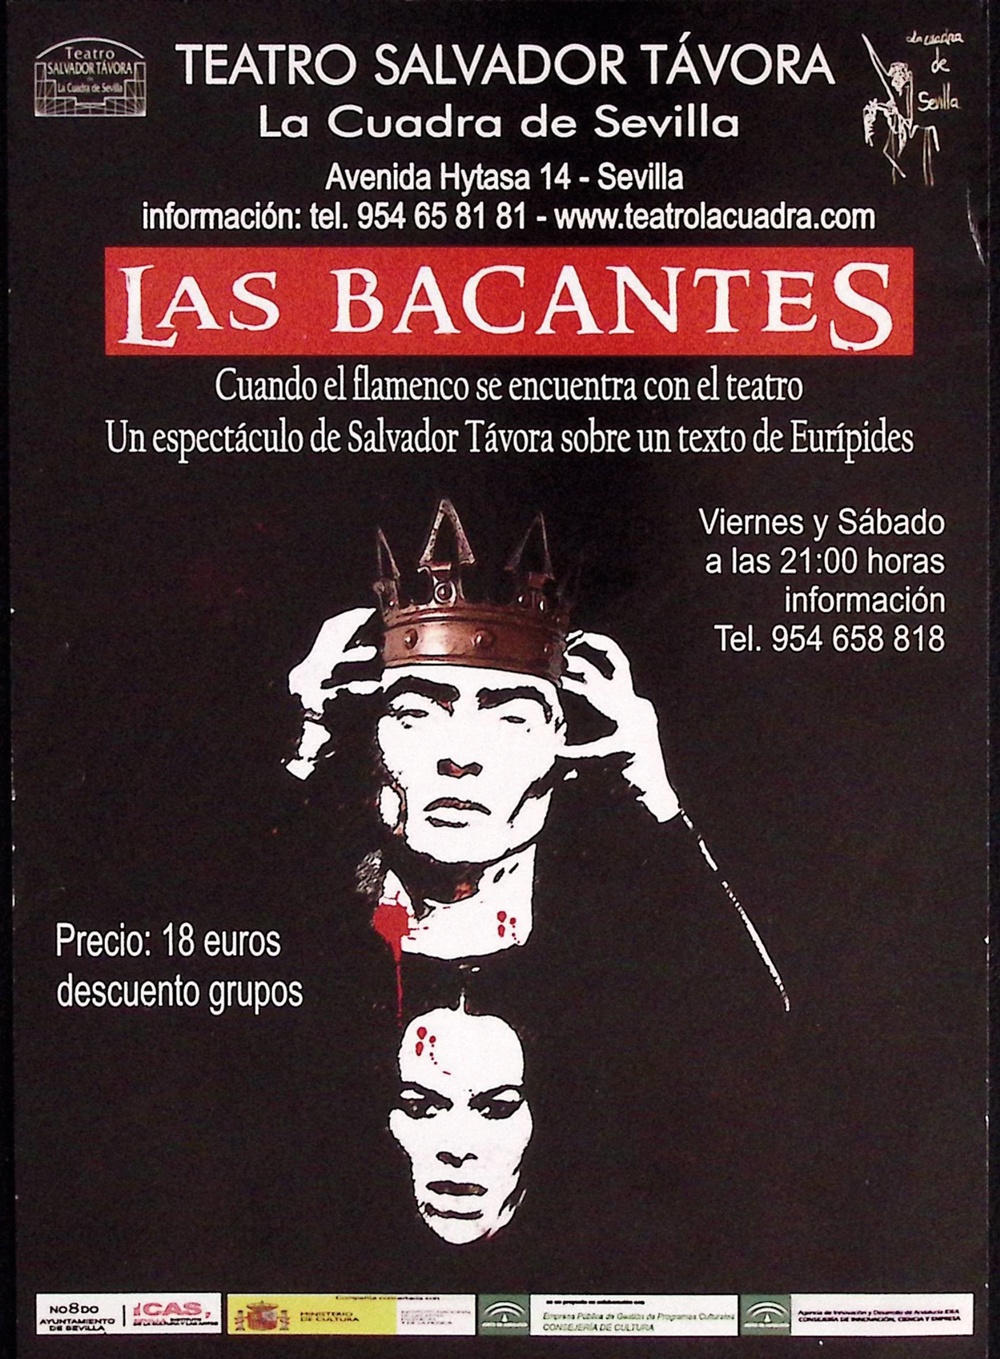 Las Bacantes. Cuando el flamenco se encuentra con el teatro. Un espectáculo de Salvador Távora sobre un texto de Eurípides. La Cuadra de Sevilla